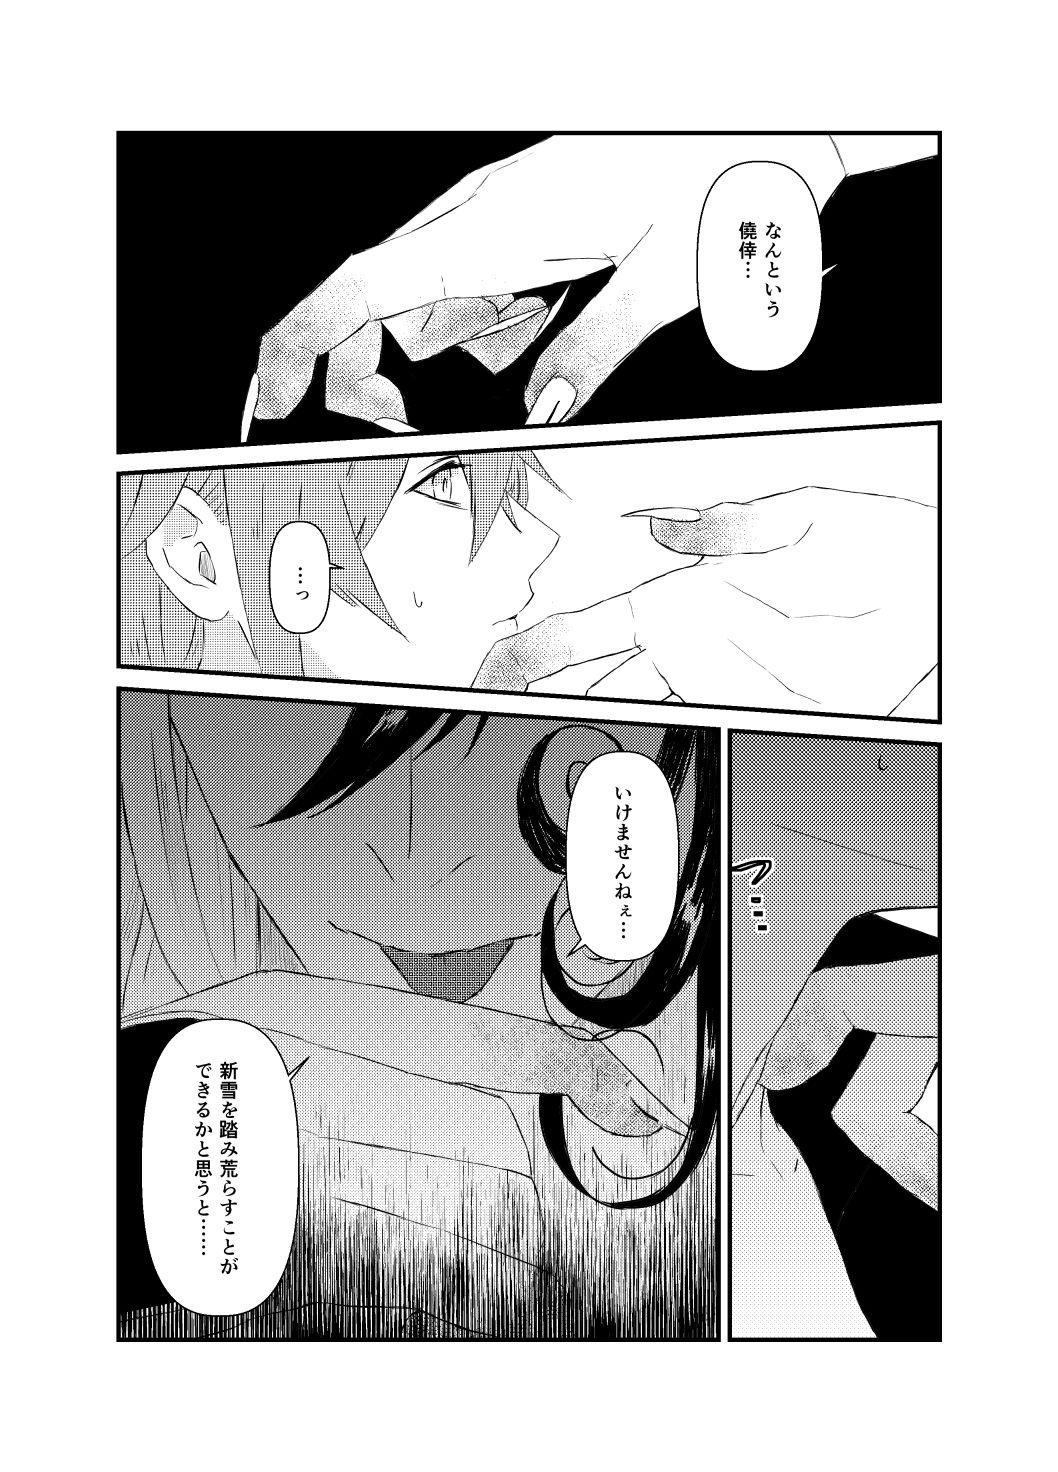 Amateur Blow Job (Kari ] [WEB sairoku] 縺 [Rin guda ♀]※ R - 18 [Fate/Grand Order) - Fate grand order Pool - Page 6